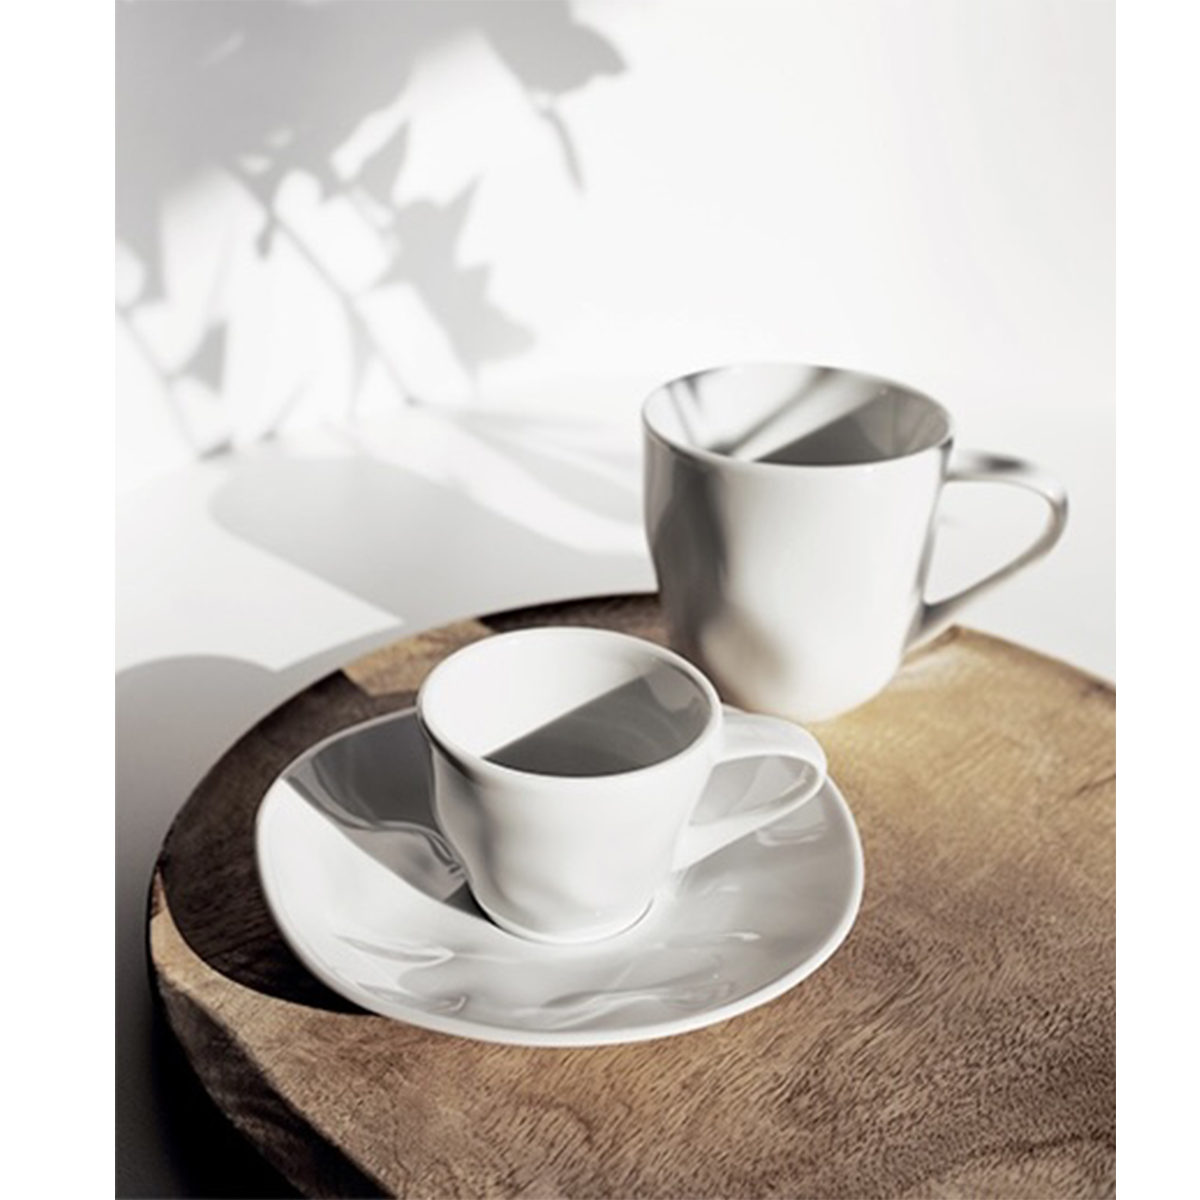 Lilien çay&kahve fincanı, 180 ml